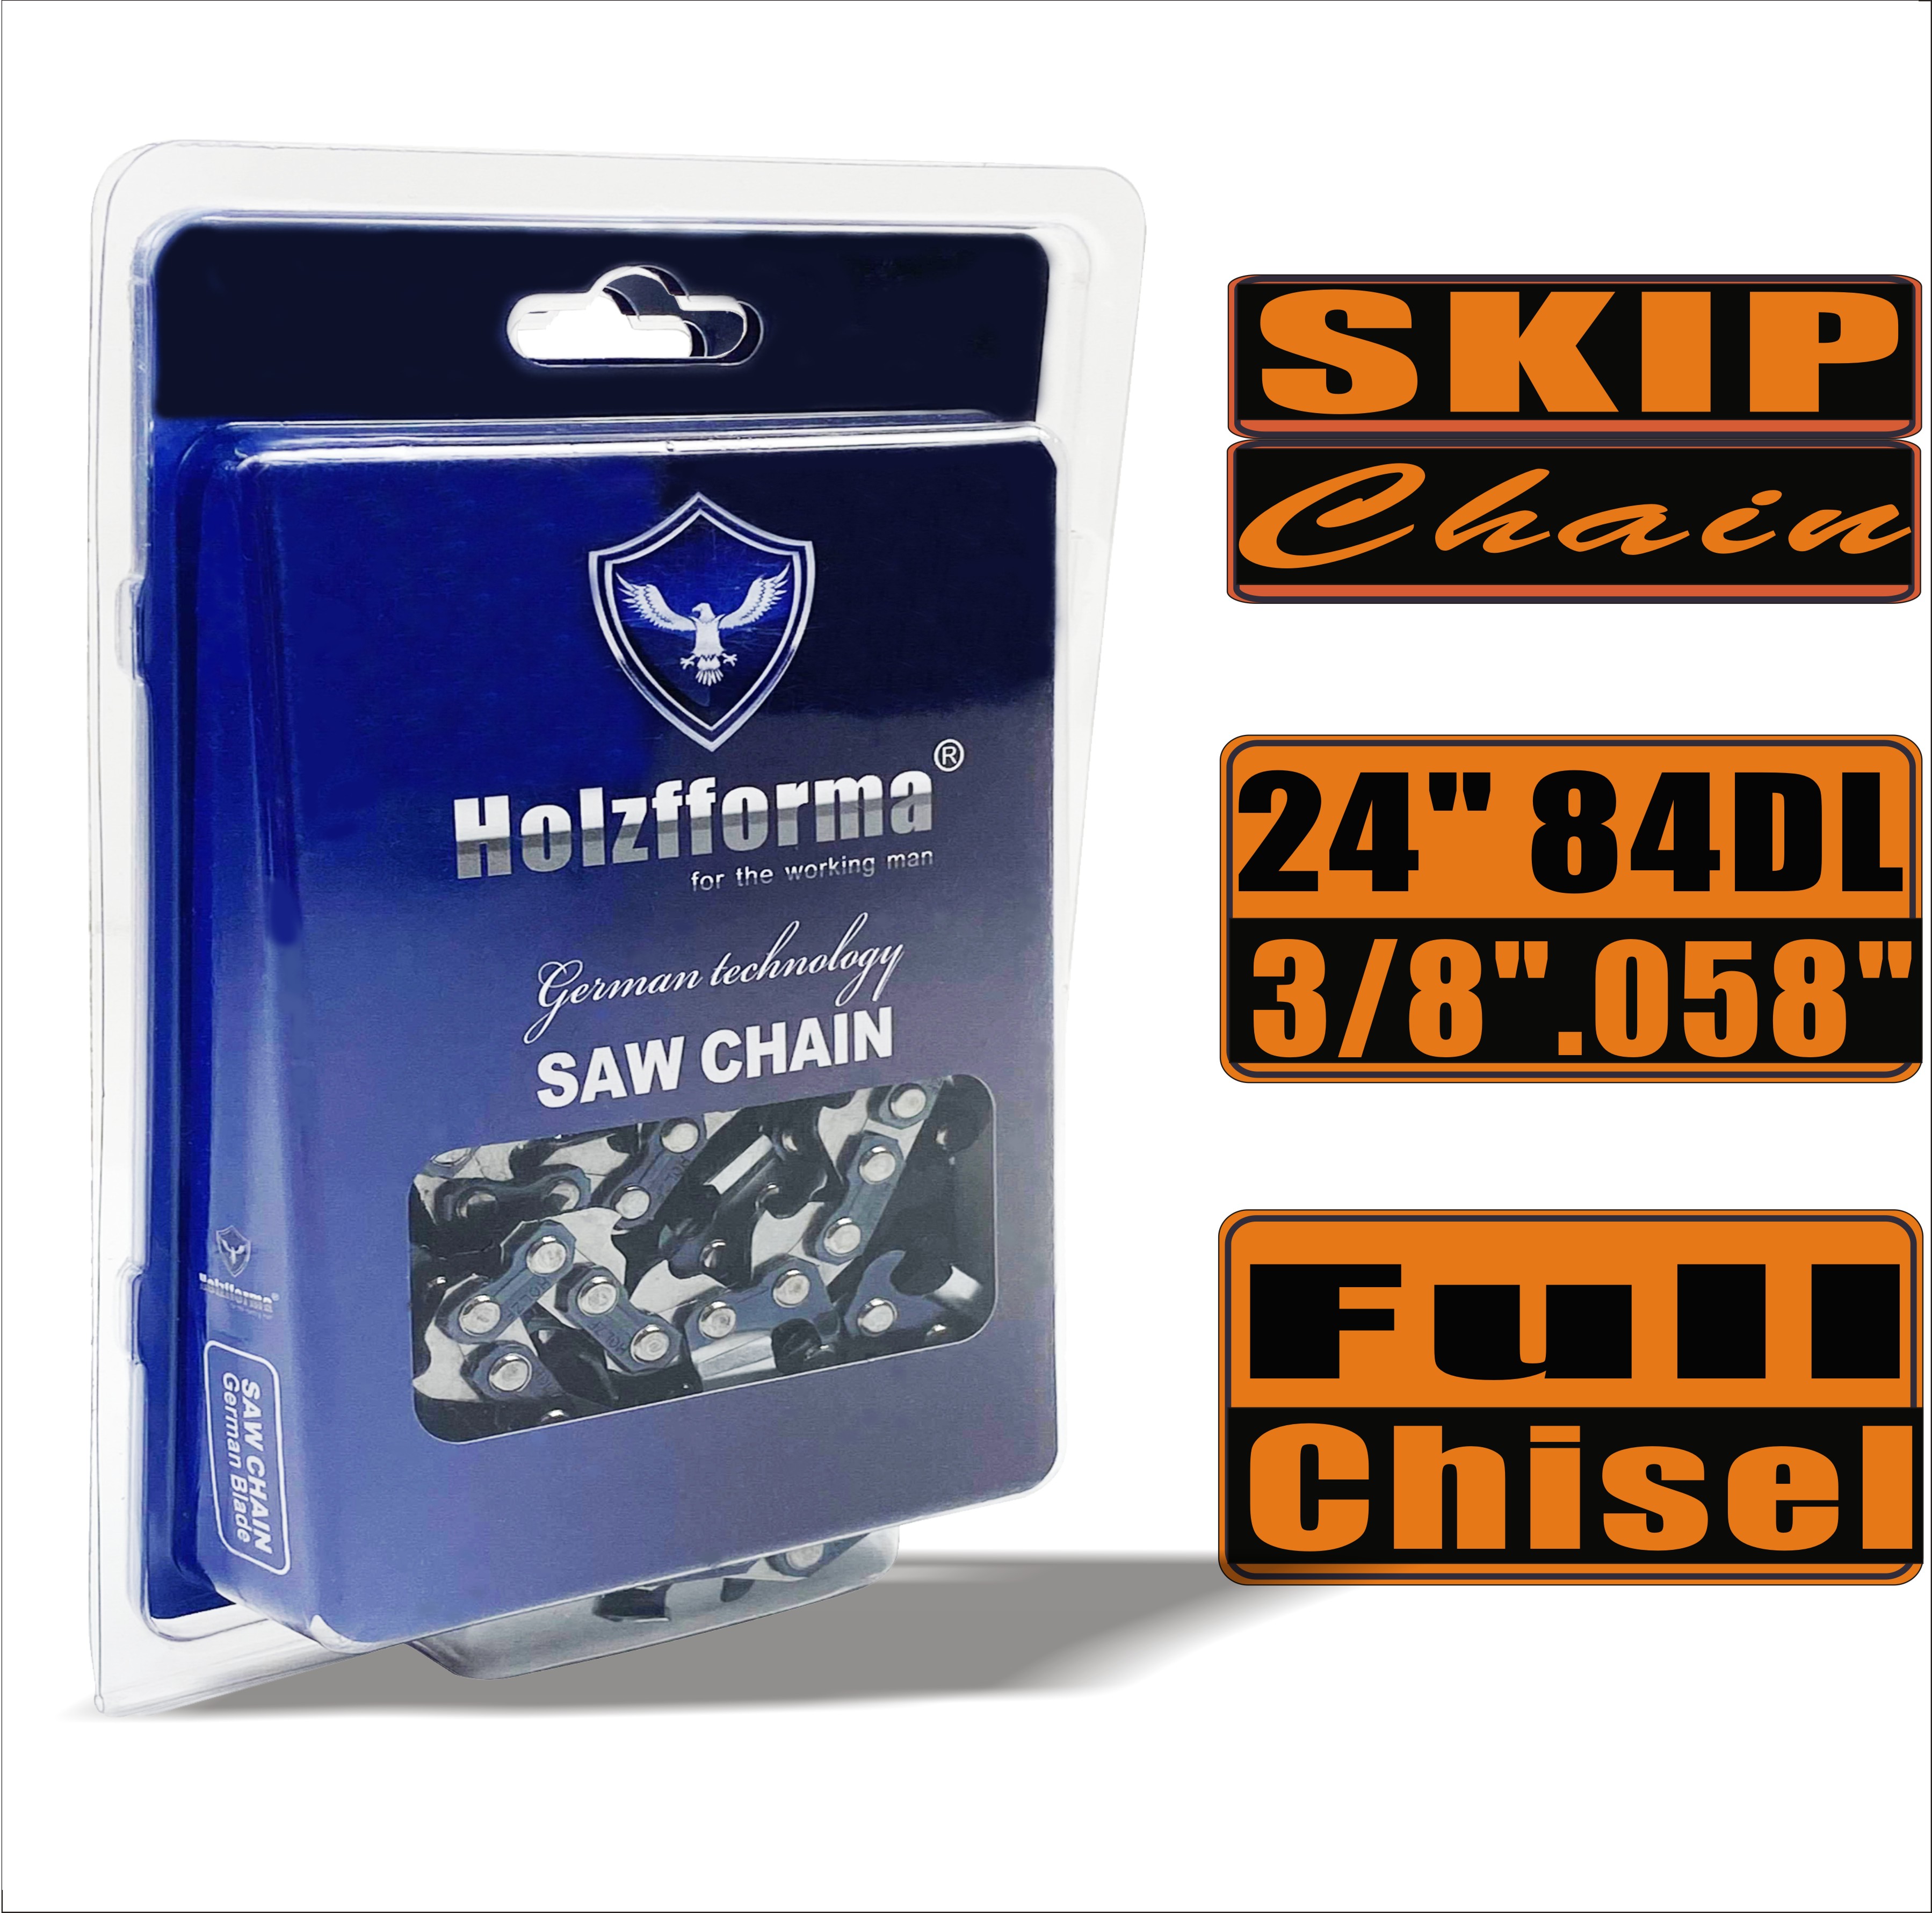 Holzfforma® Skip Chain Full Chisel 3/8'' .058'' 24inch 84DL цепи для Бензопилы Высококачественные немецкие лезвия и звенья